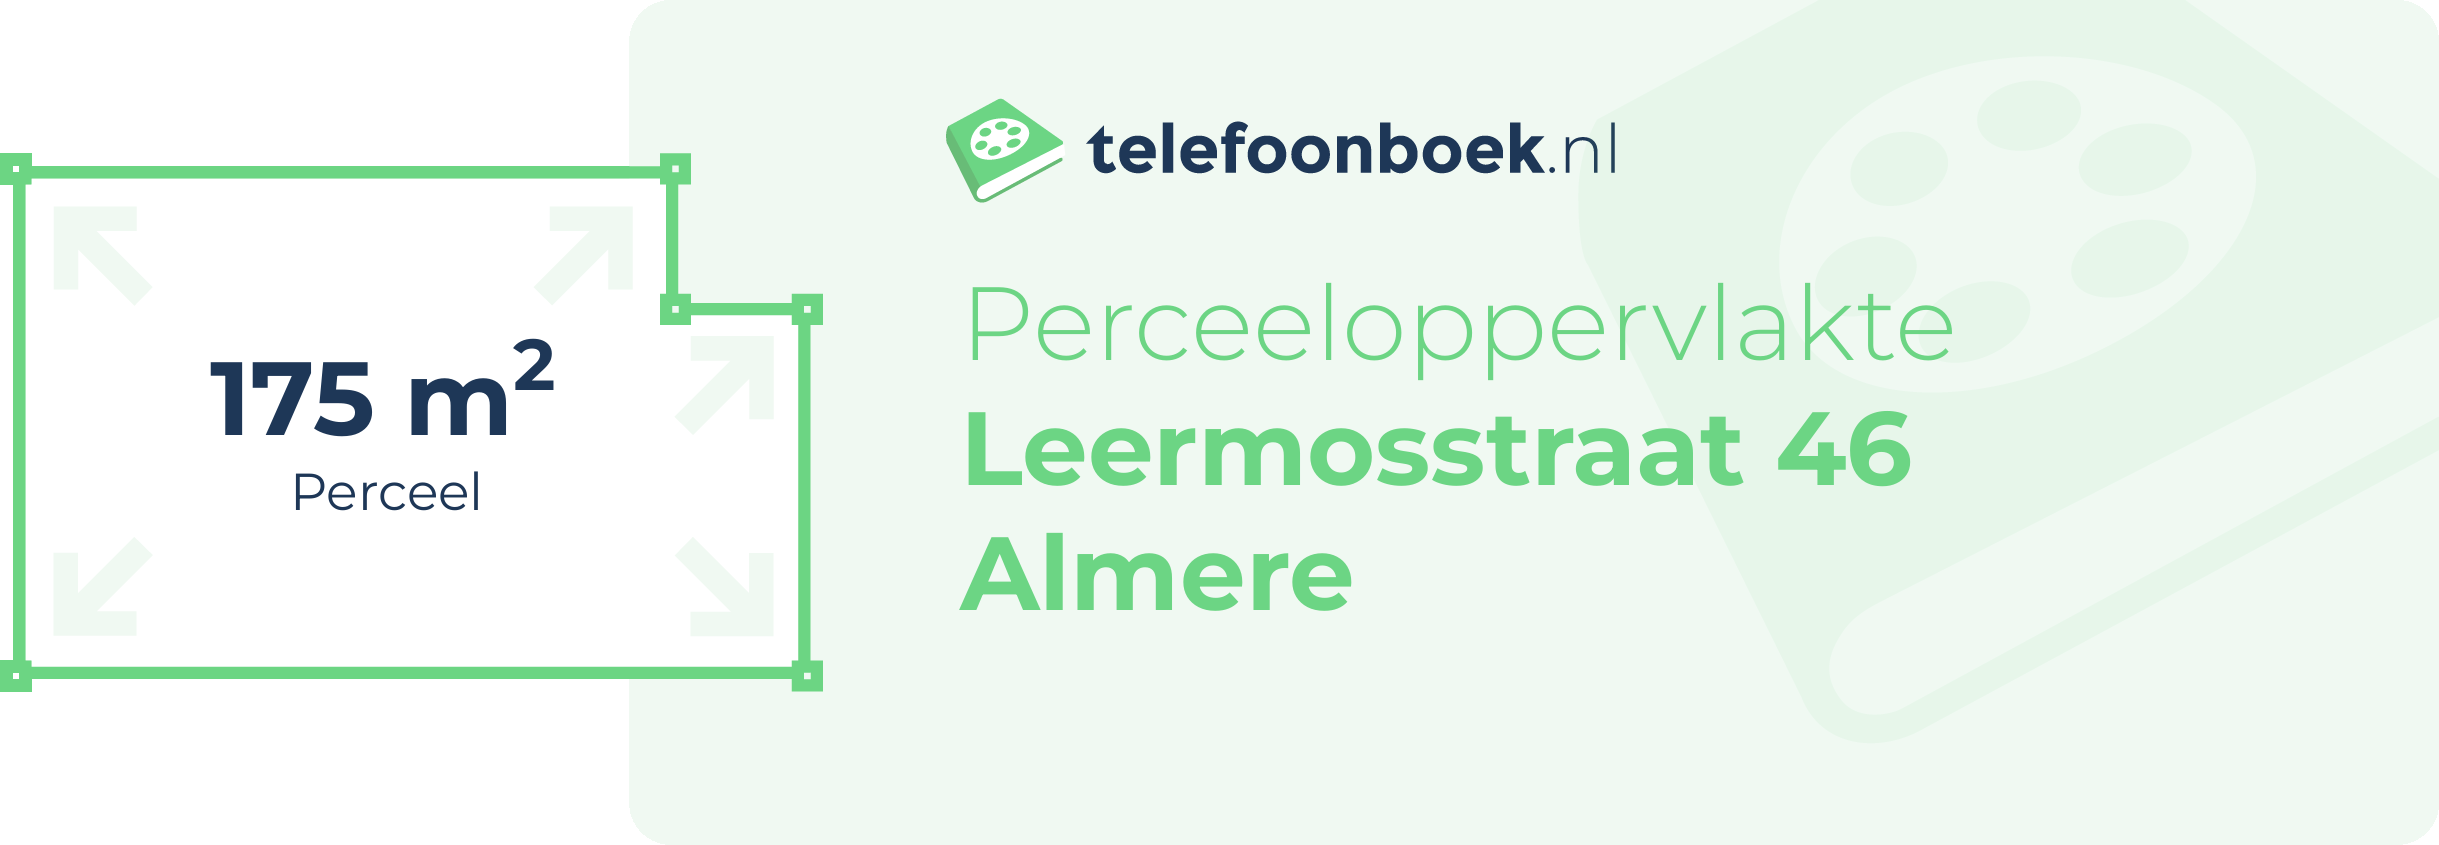 Perceeloppervlakte Leermosstraat 46 Almere